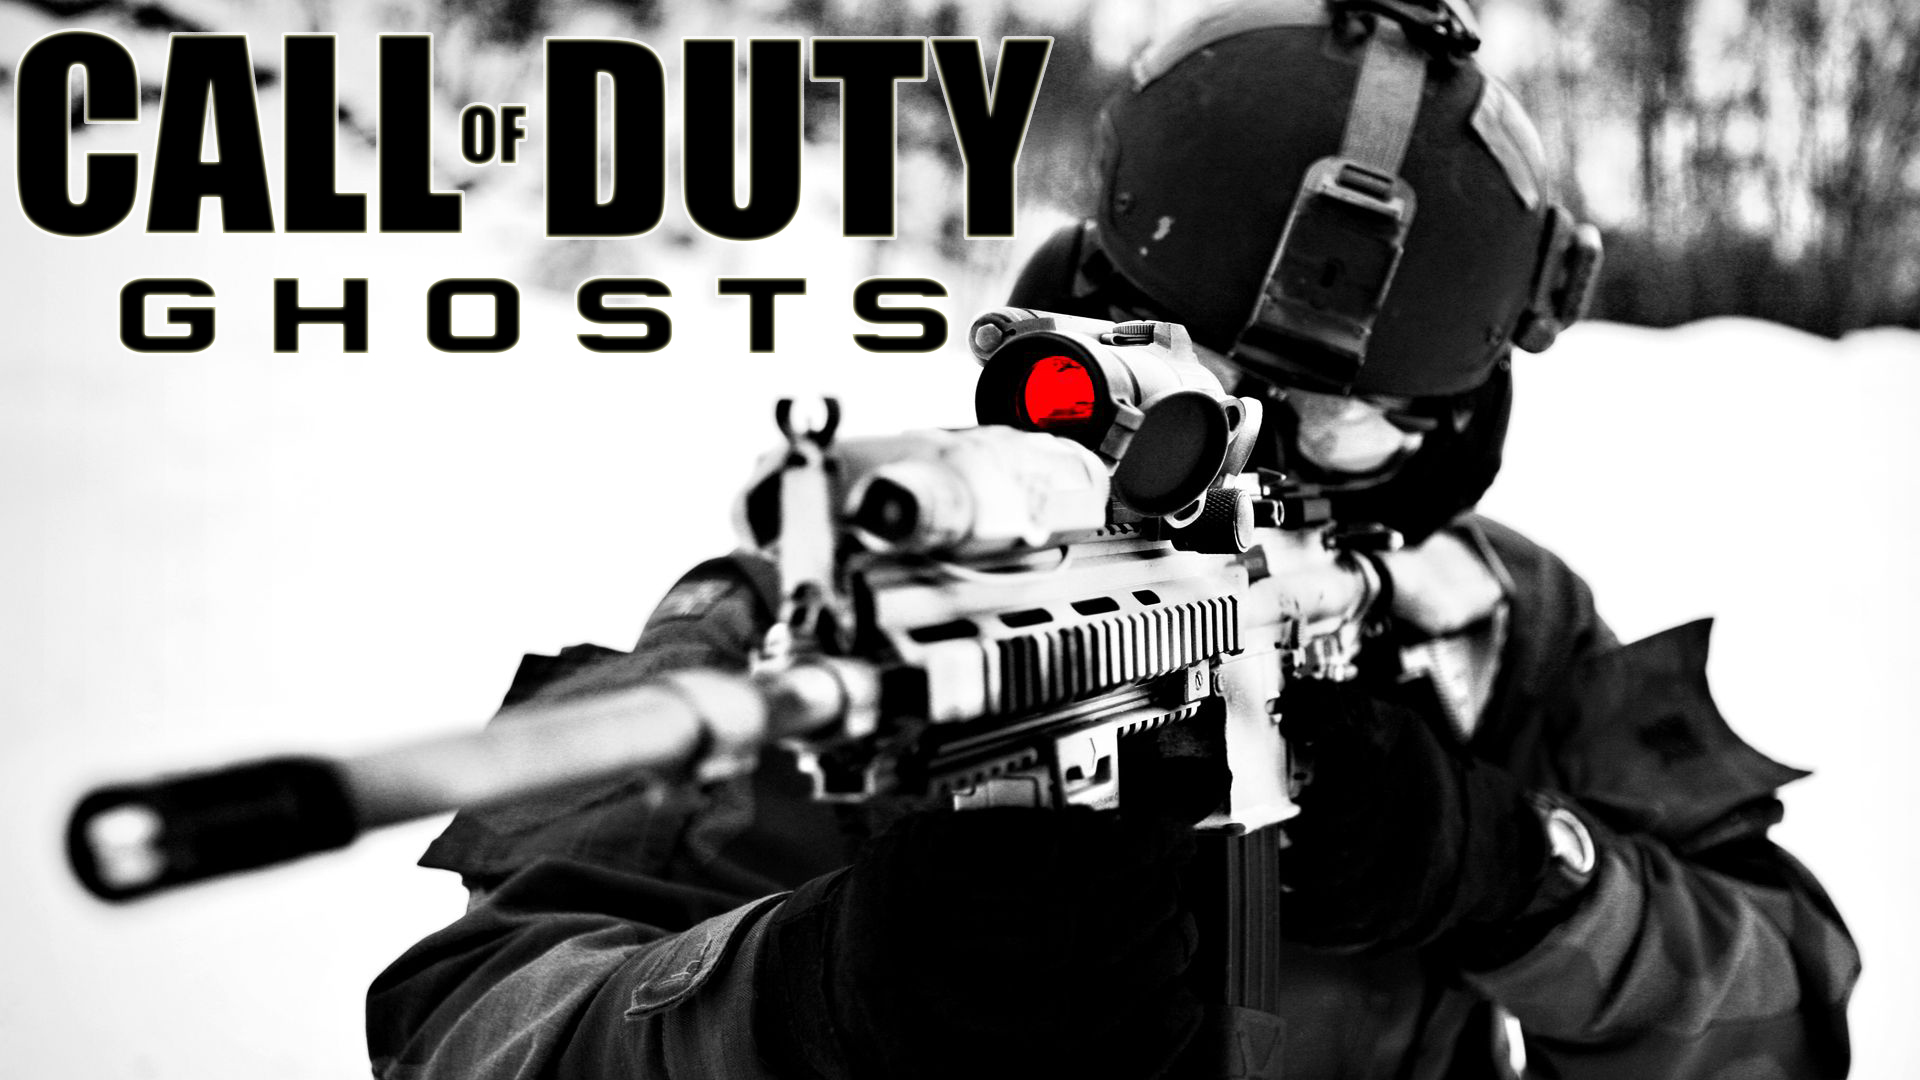 50+] Call of Duty Ghosts Wallpaper - WallpaperSafari